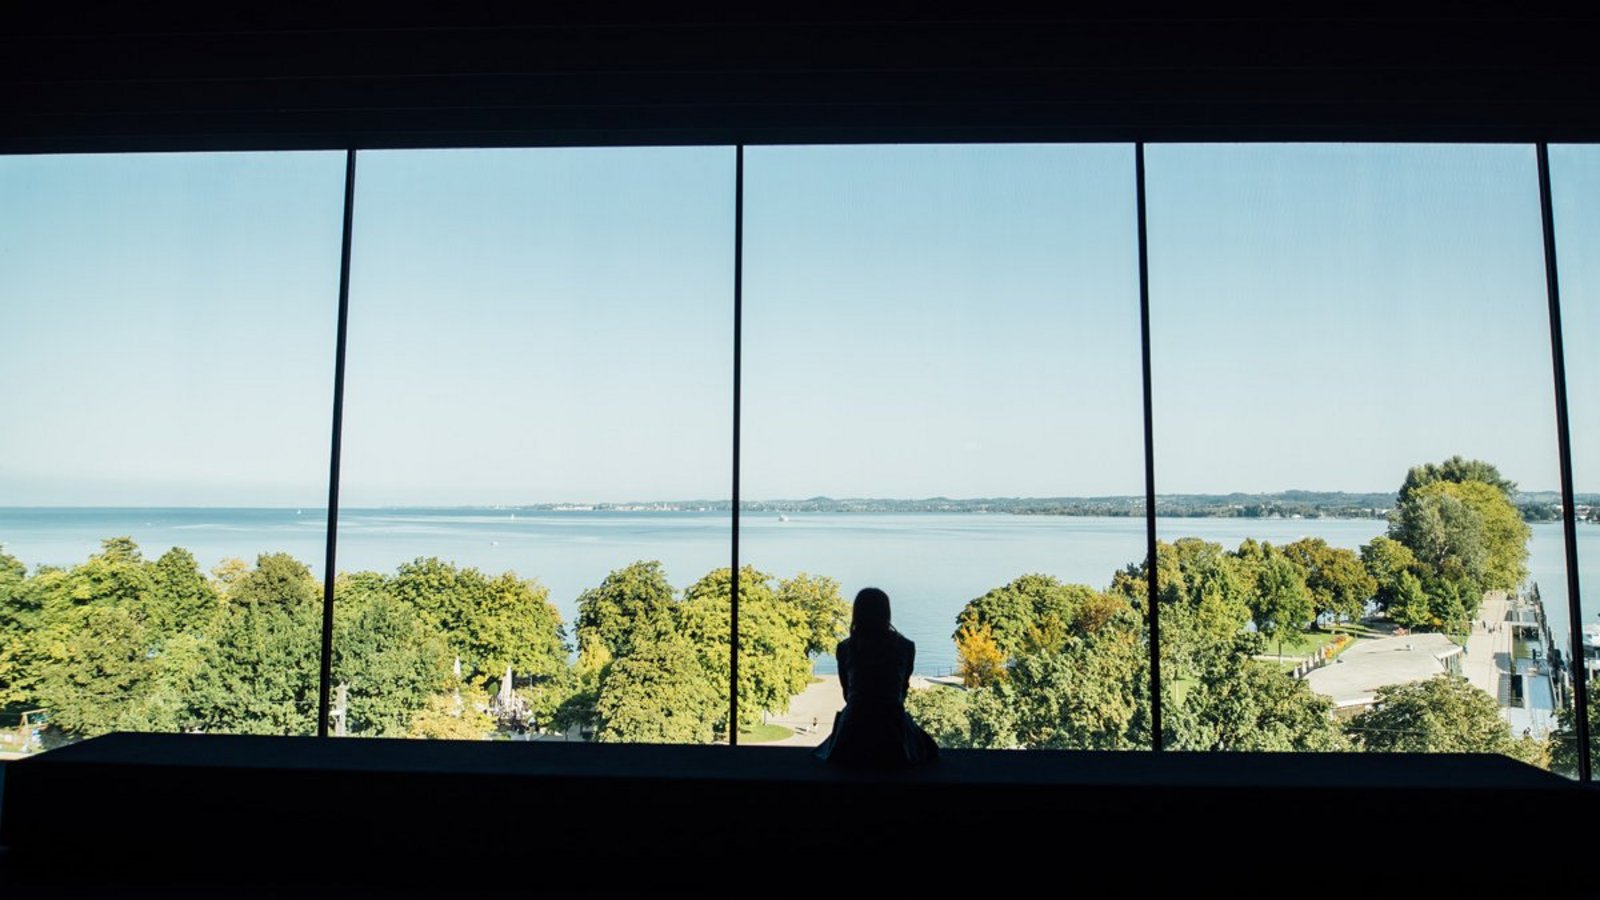 Das Panoramafenster im vorarlberg museum mit Blick auf den sommerlichen Bodensee und die Silhouette einer sitzenden Frau